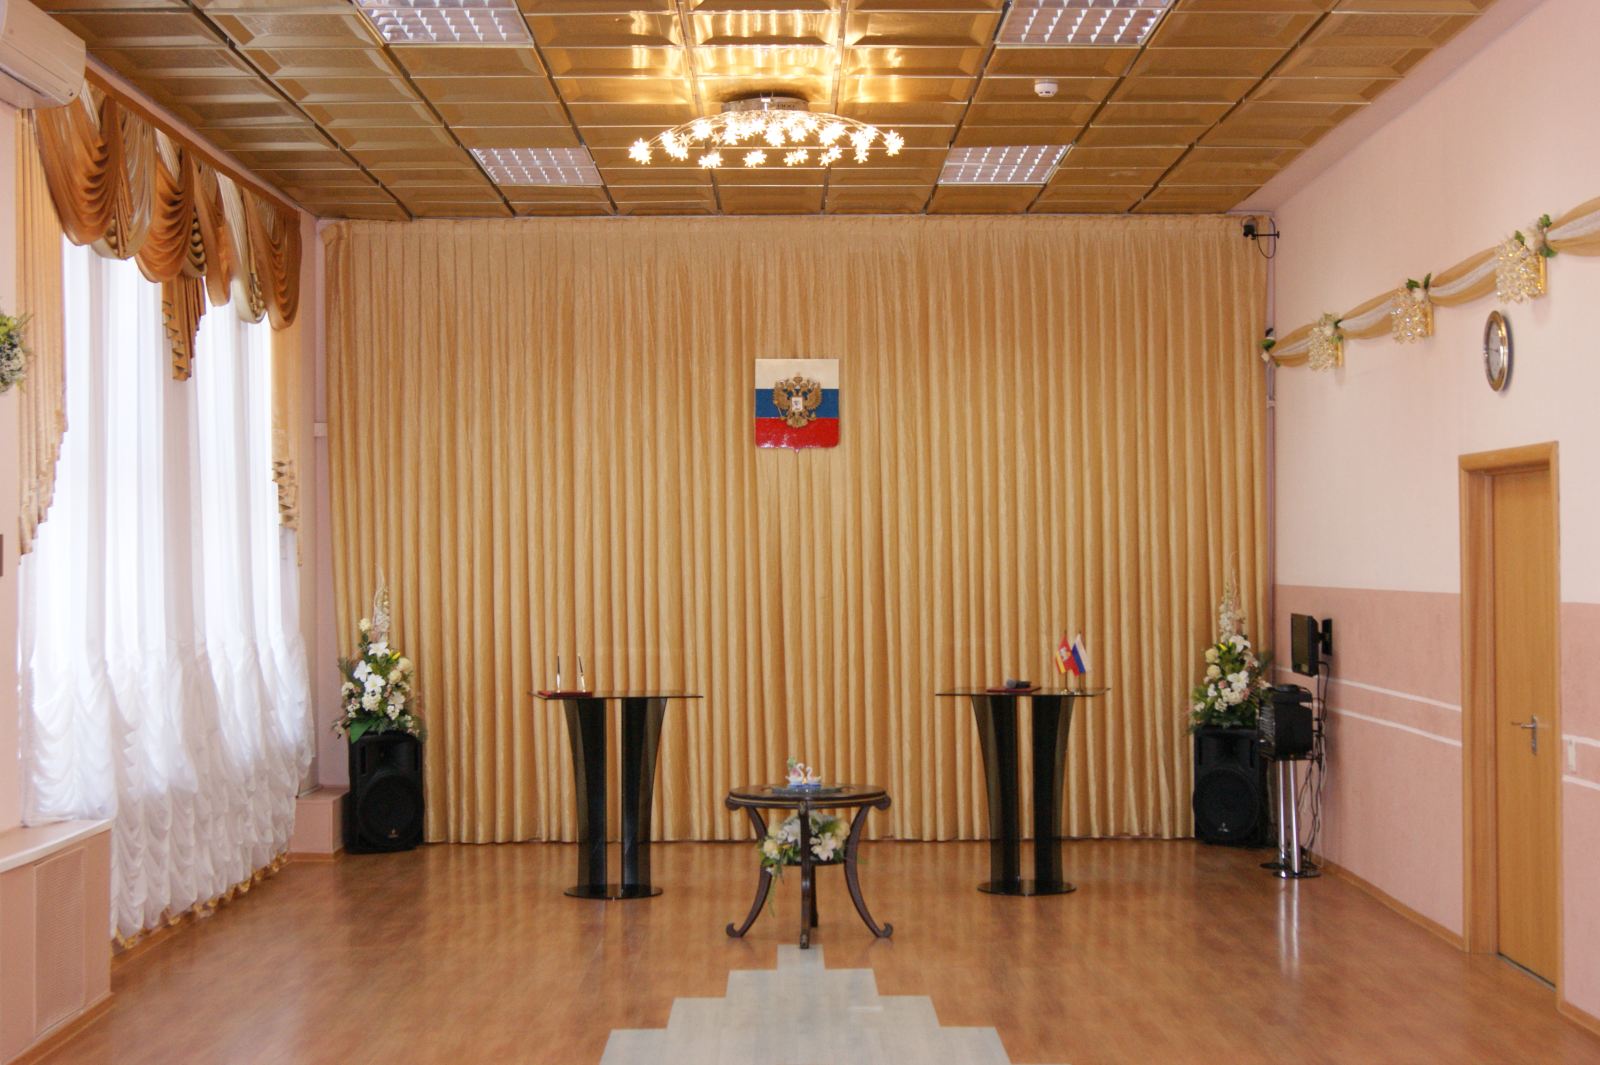 ЗАГС Тракторозаводского района города Челябинска (фото)